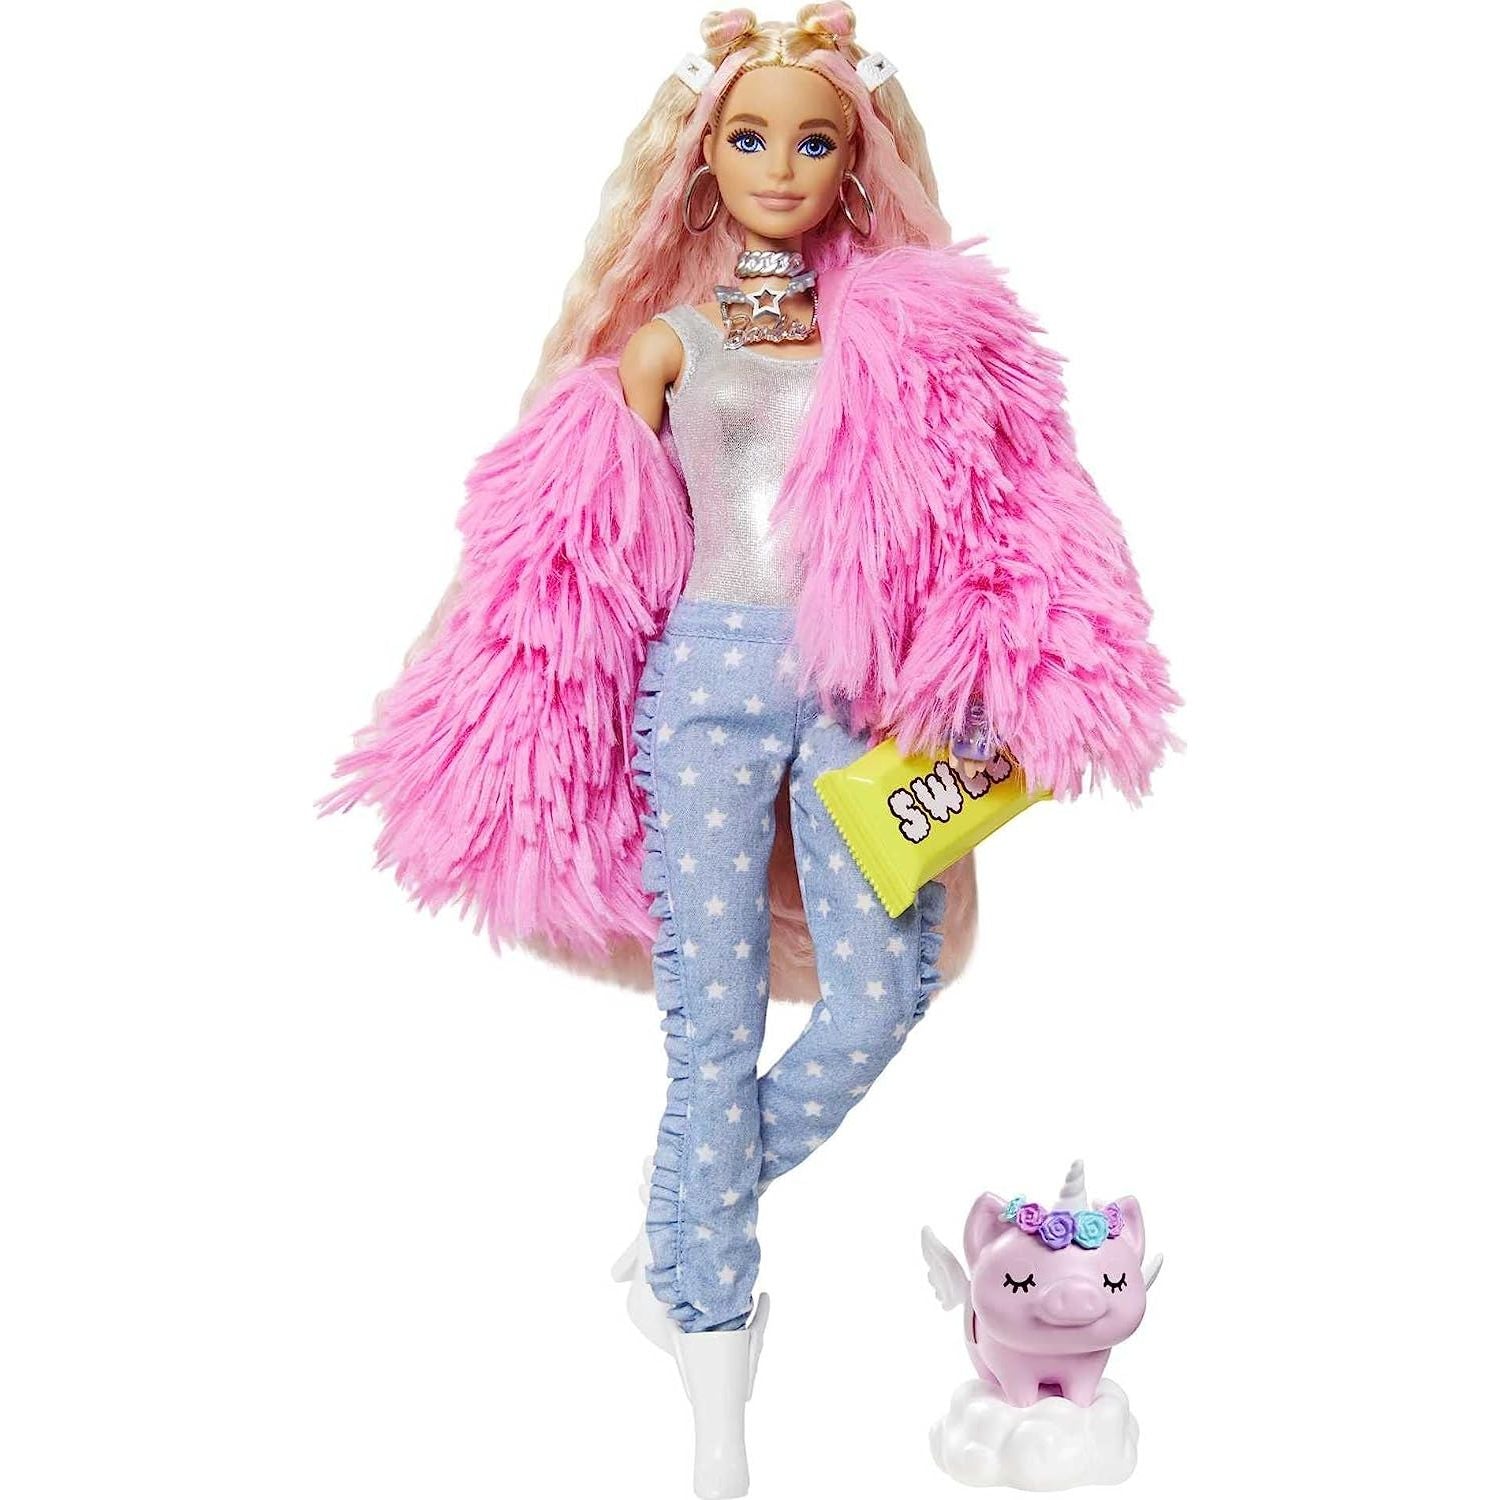 Barbie Extra Doll GYJ78